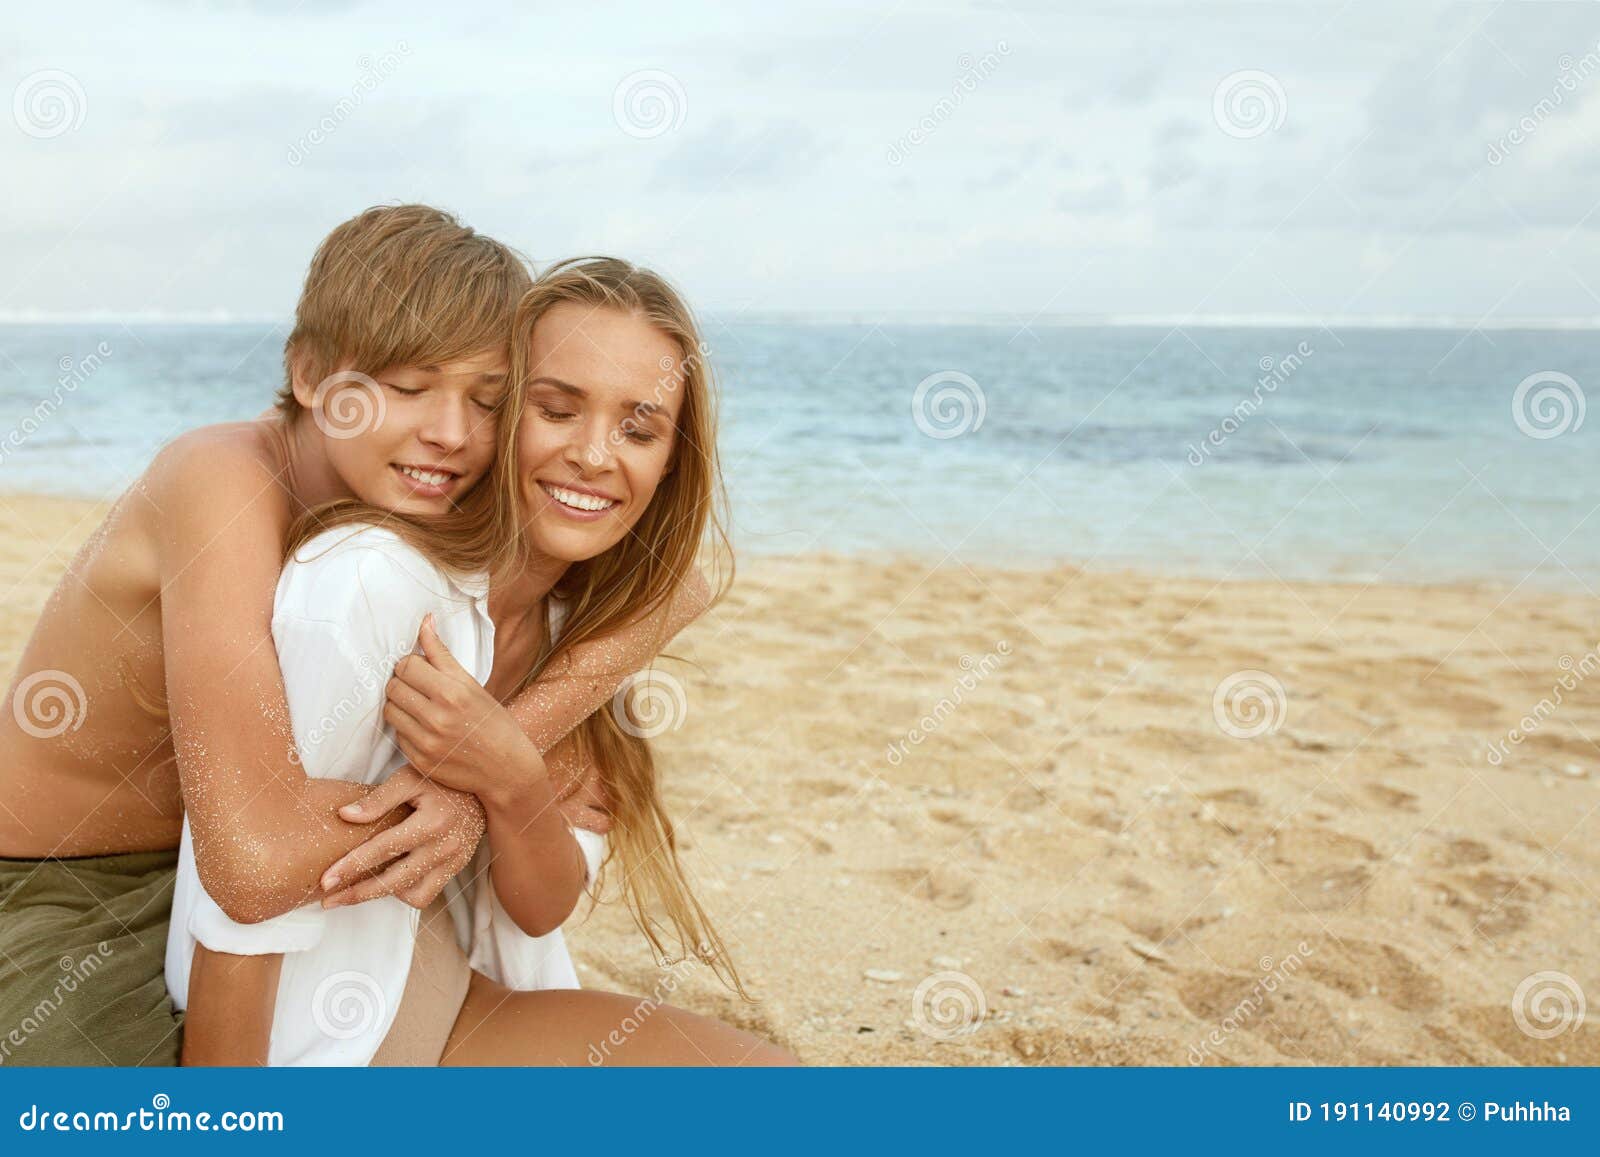 Мама на курорте рассказ. Подросток с мамой на пляже. Девочка с мамамой на пляже. Максимова с мамой на пляже. Мать с сыном обнимаются на пляже.